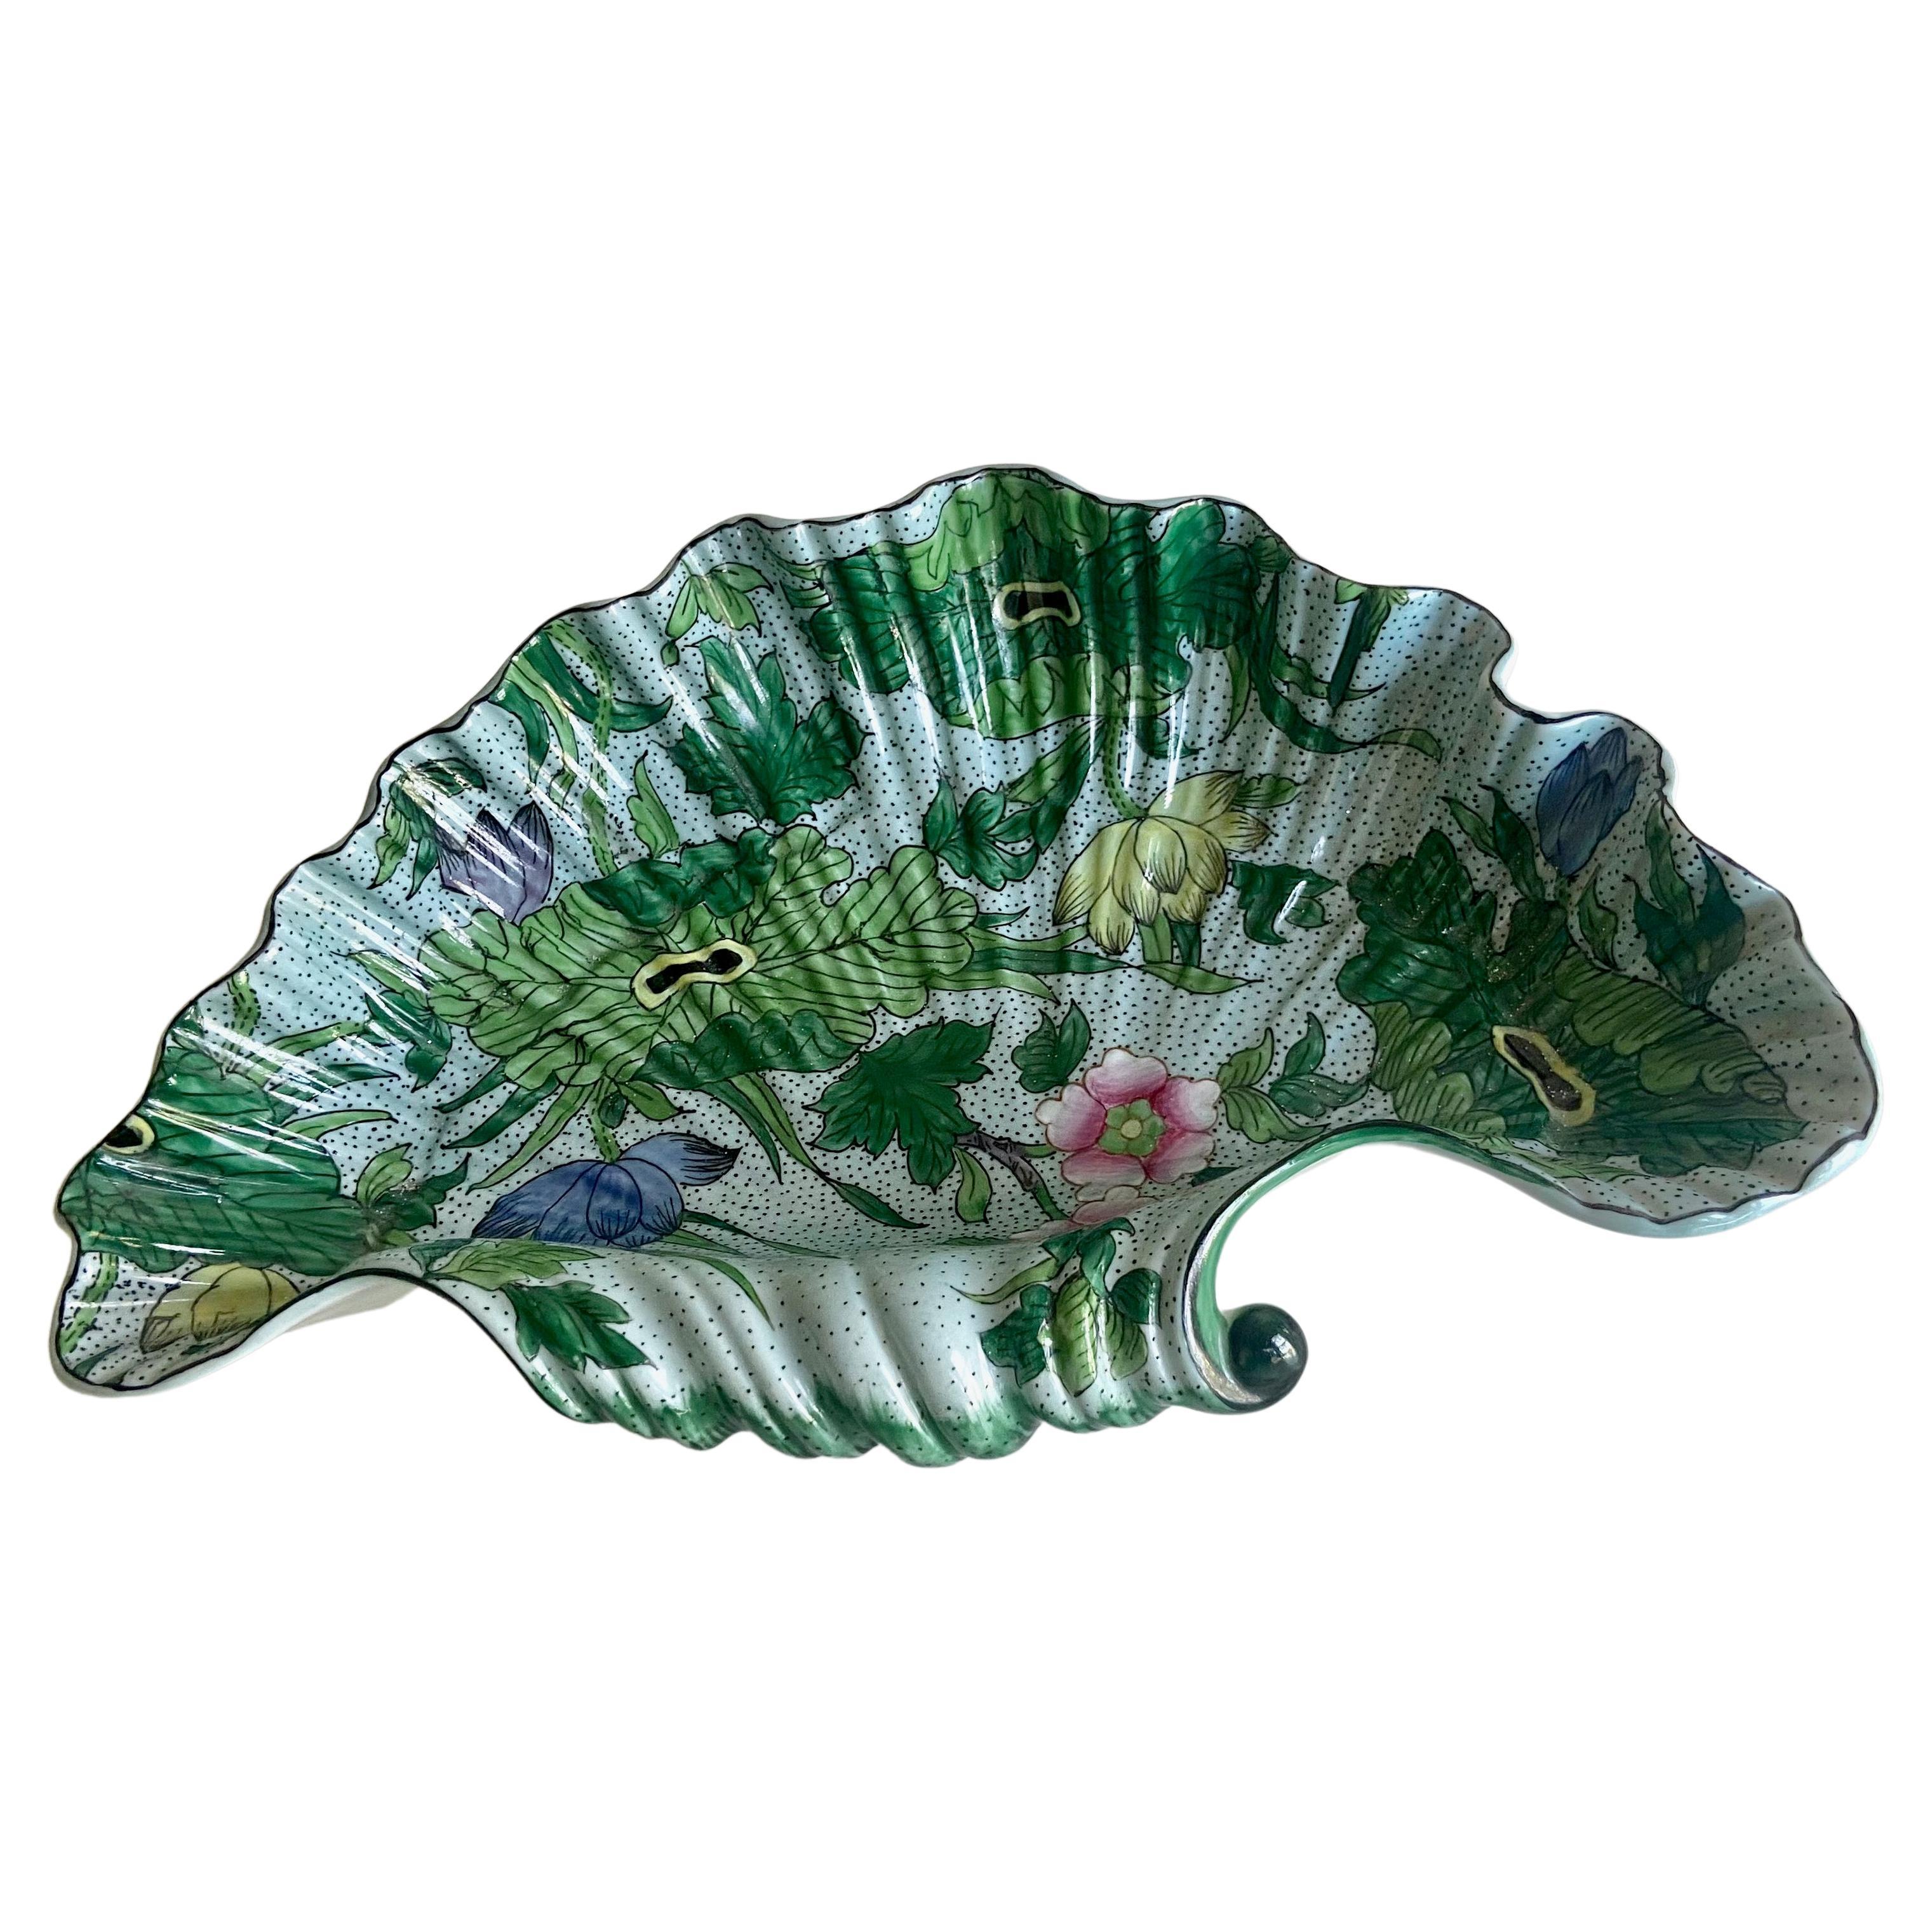 Porcelaine De Paris Clam Shell Bowl For Sale